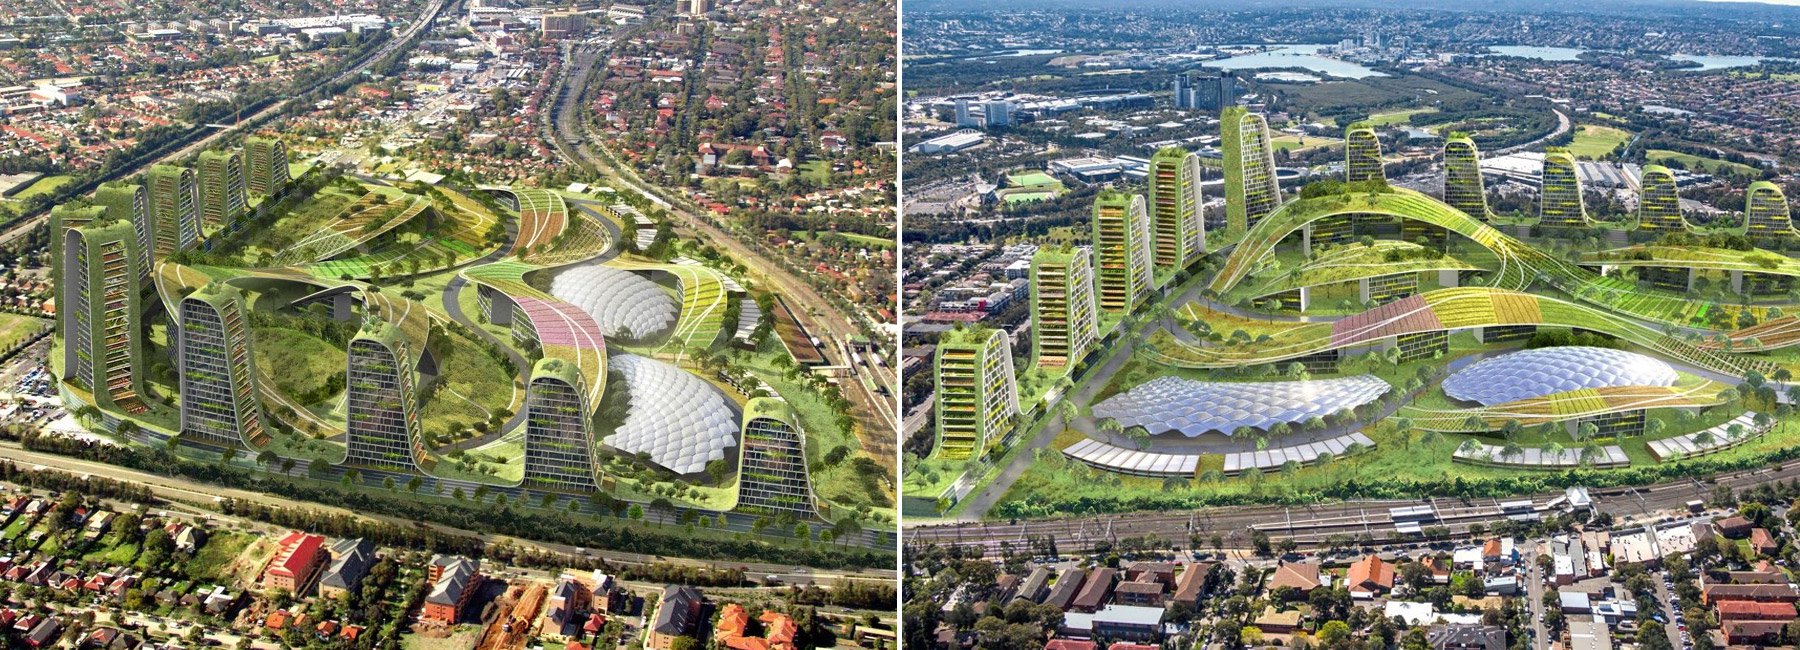 tony owen partners将悉尼的弗莱明顿区想象成未来的可持续发展城市